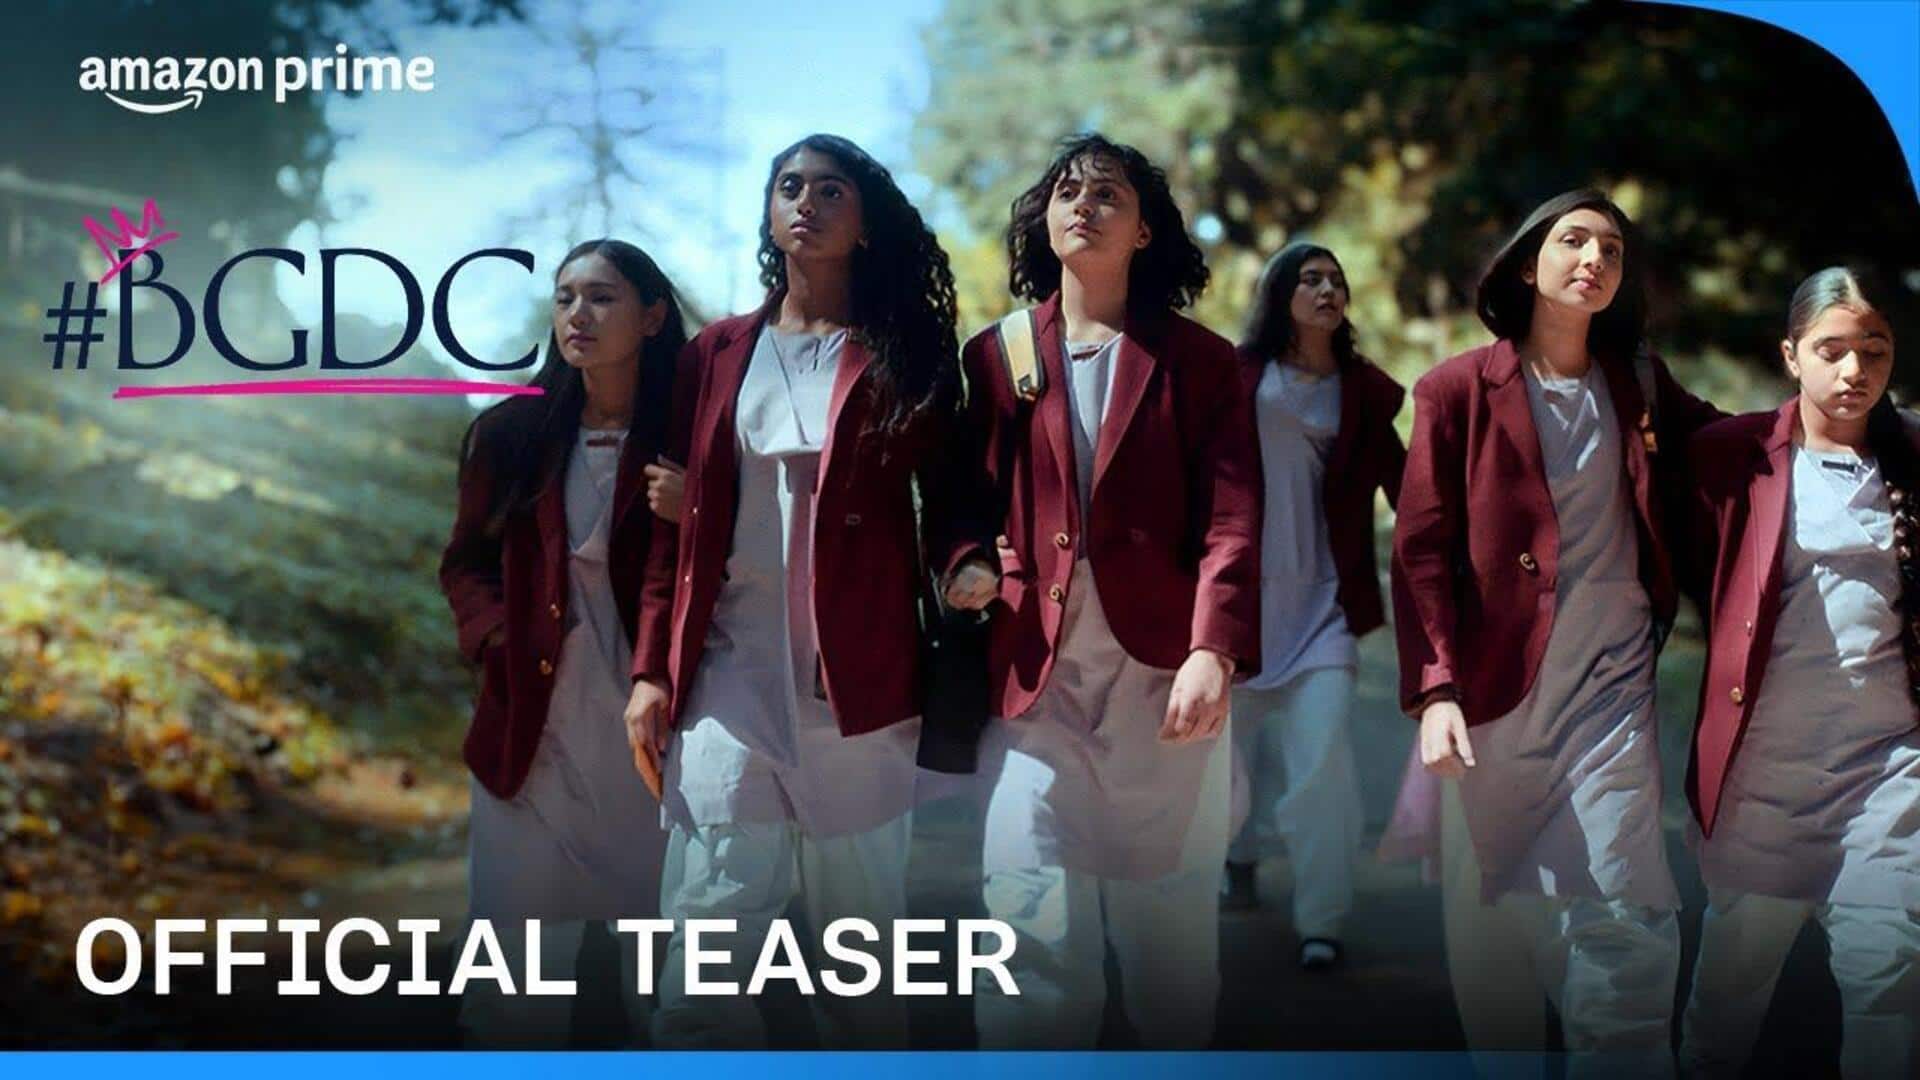 Pooja Bhatt's 'BGDC' teaser unveils saga of dreams, sisterhood